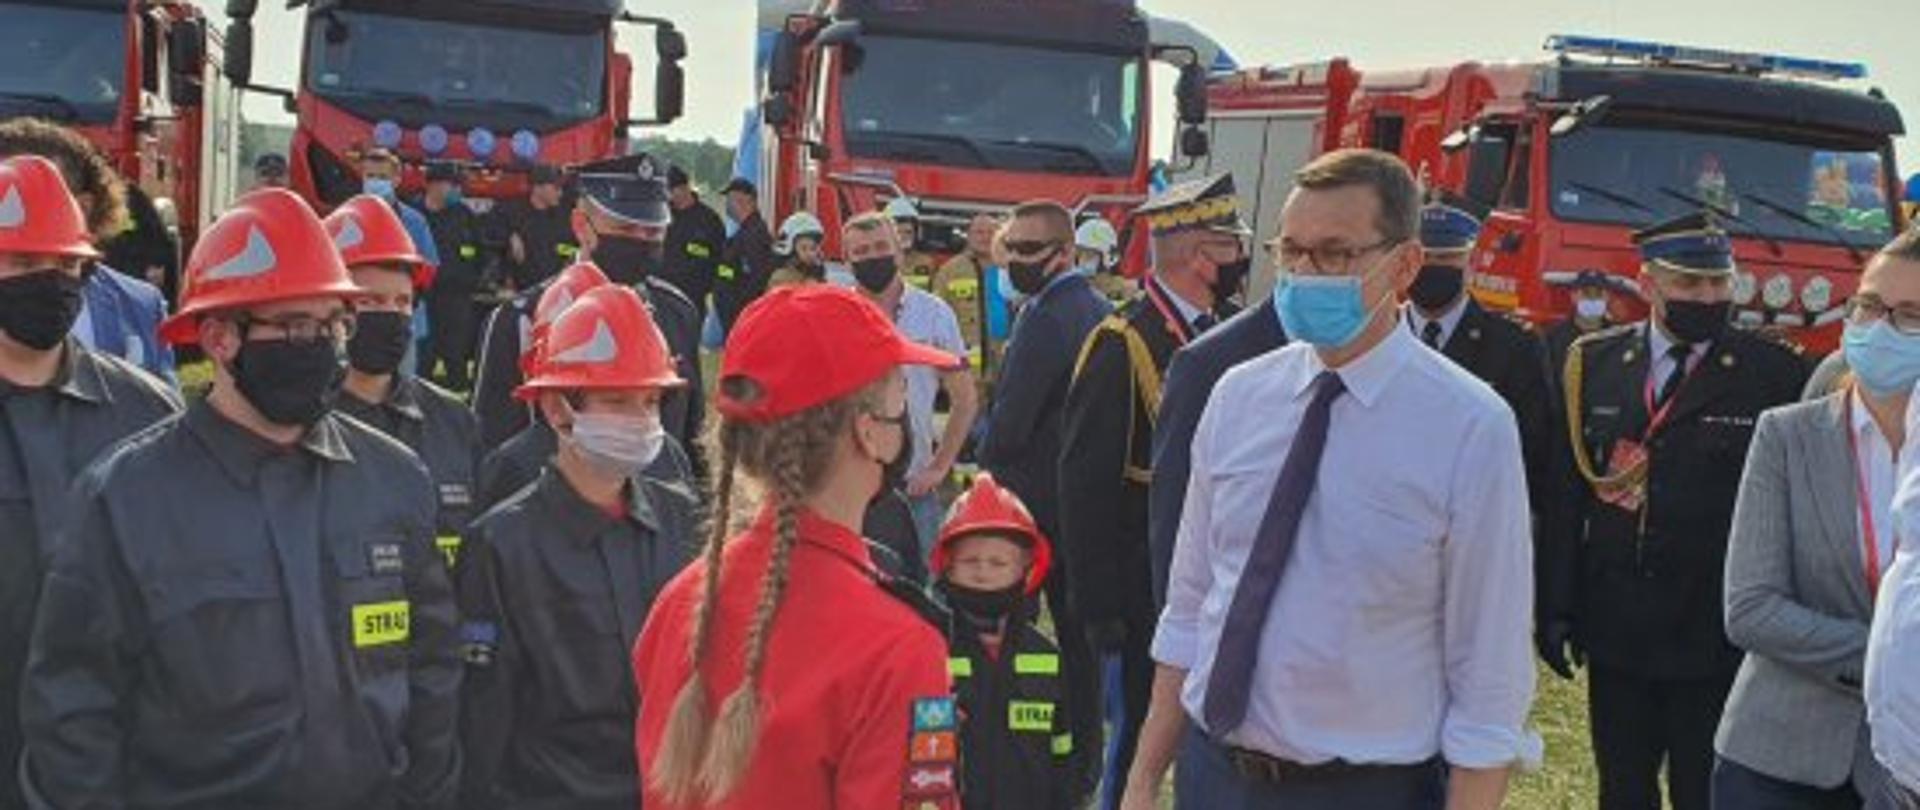 Premier Polski rozmawia z młodzieżową drużyną pożarniczą. W tle strażacy i pojazdy pożarnicze.